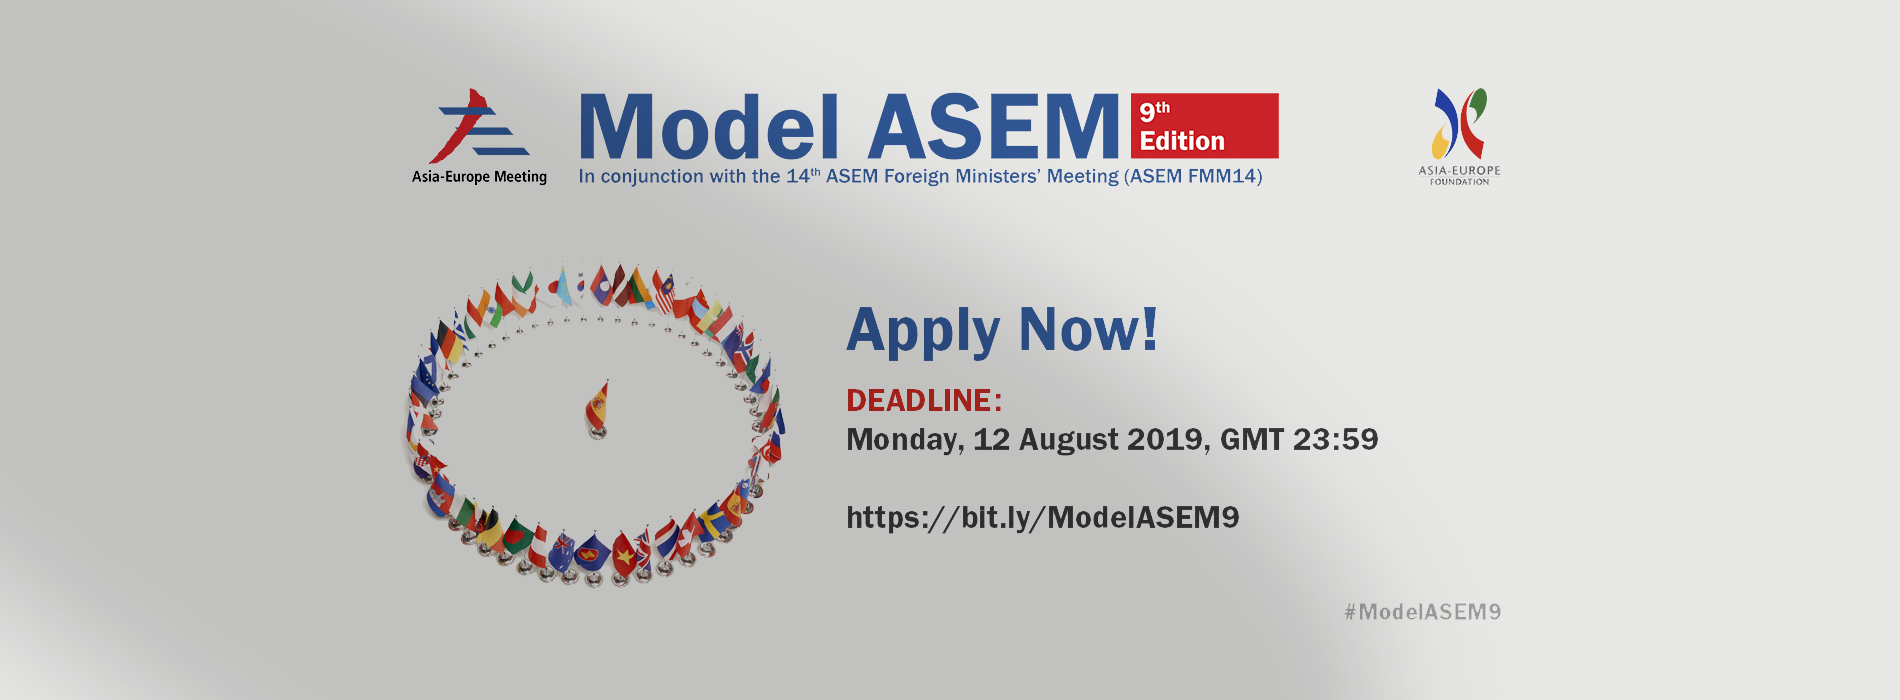 Image for Model ASEM Conference